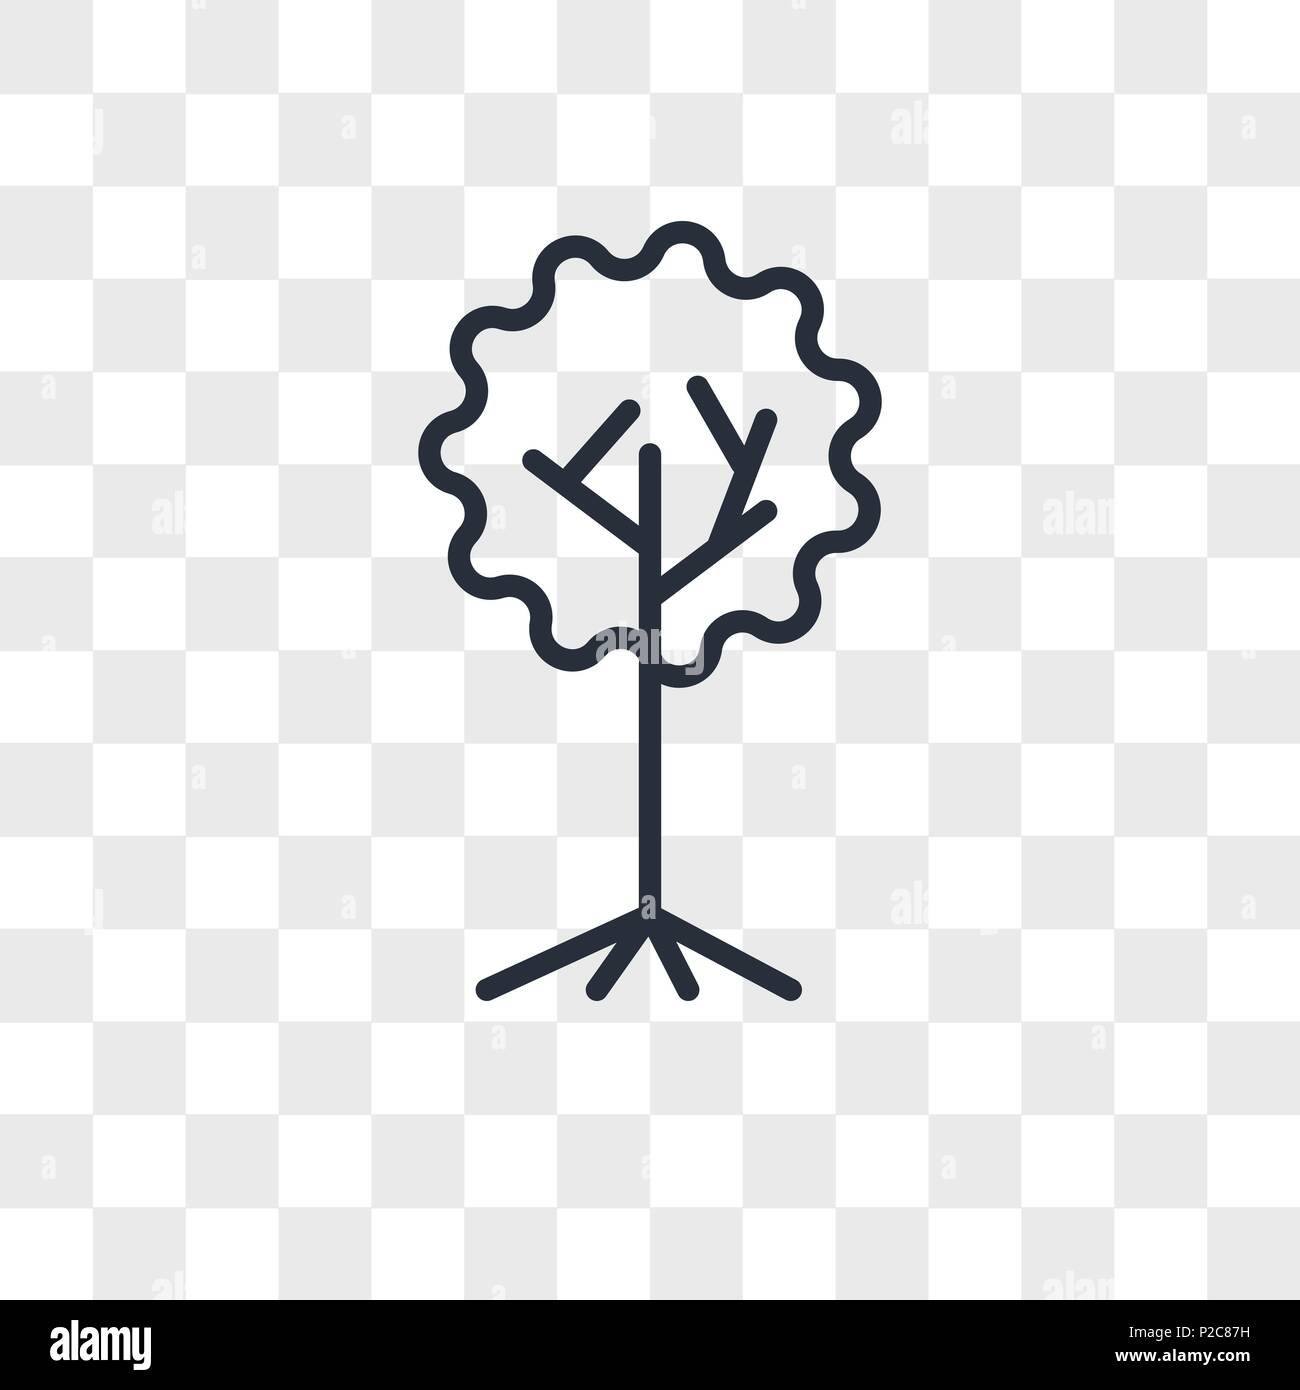 Baum Des Lebens Vektor Icon Auf Transparentem Hintergrund Isoliert Baum Des Lebens Logo Konzept Stock Vektorgrafik Alamy